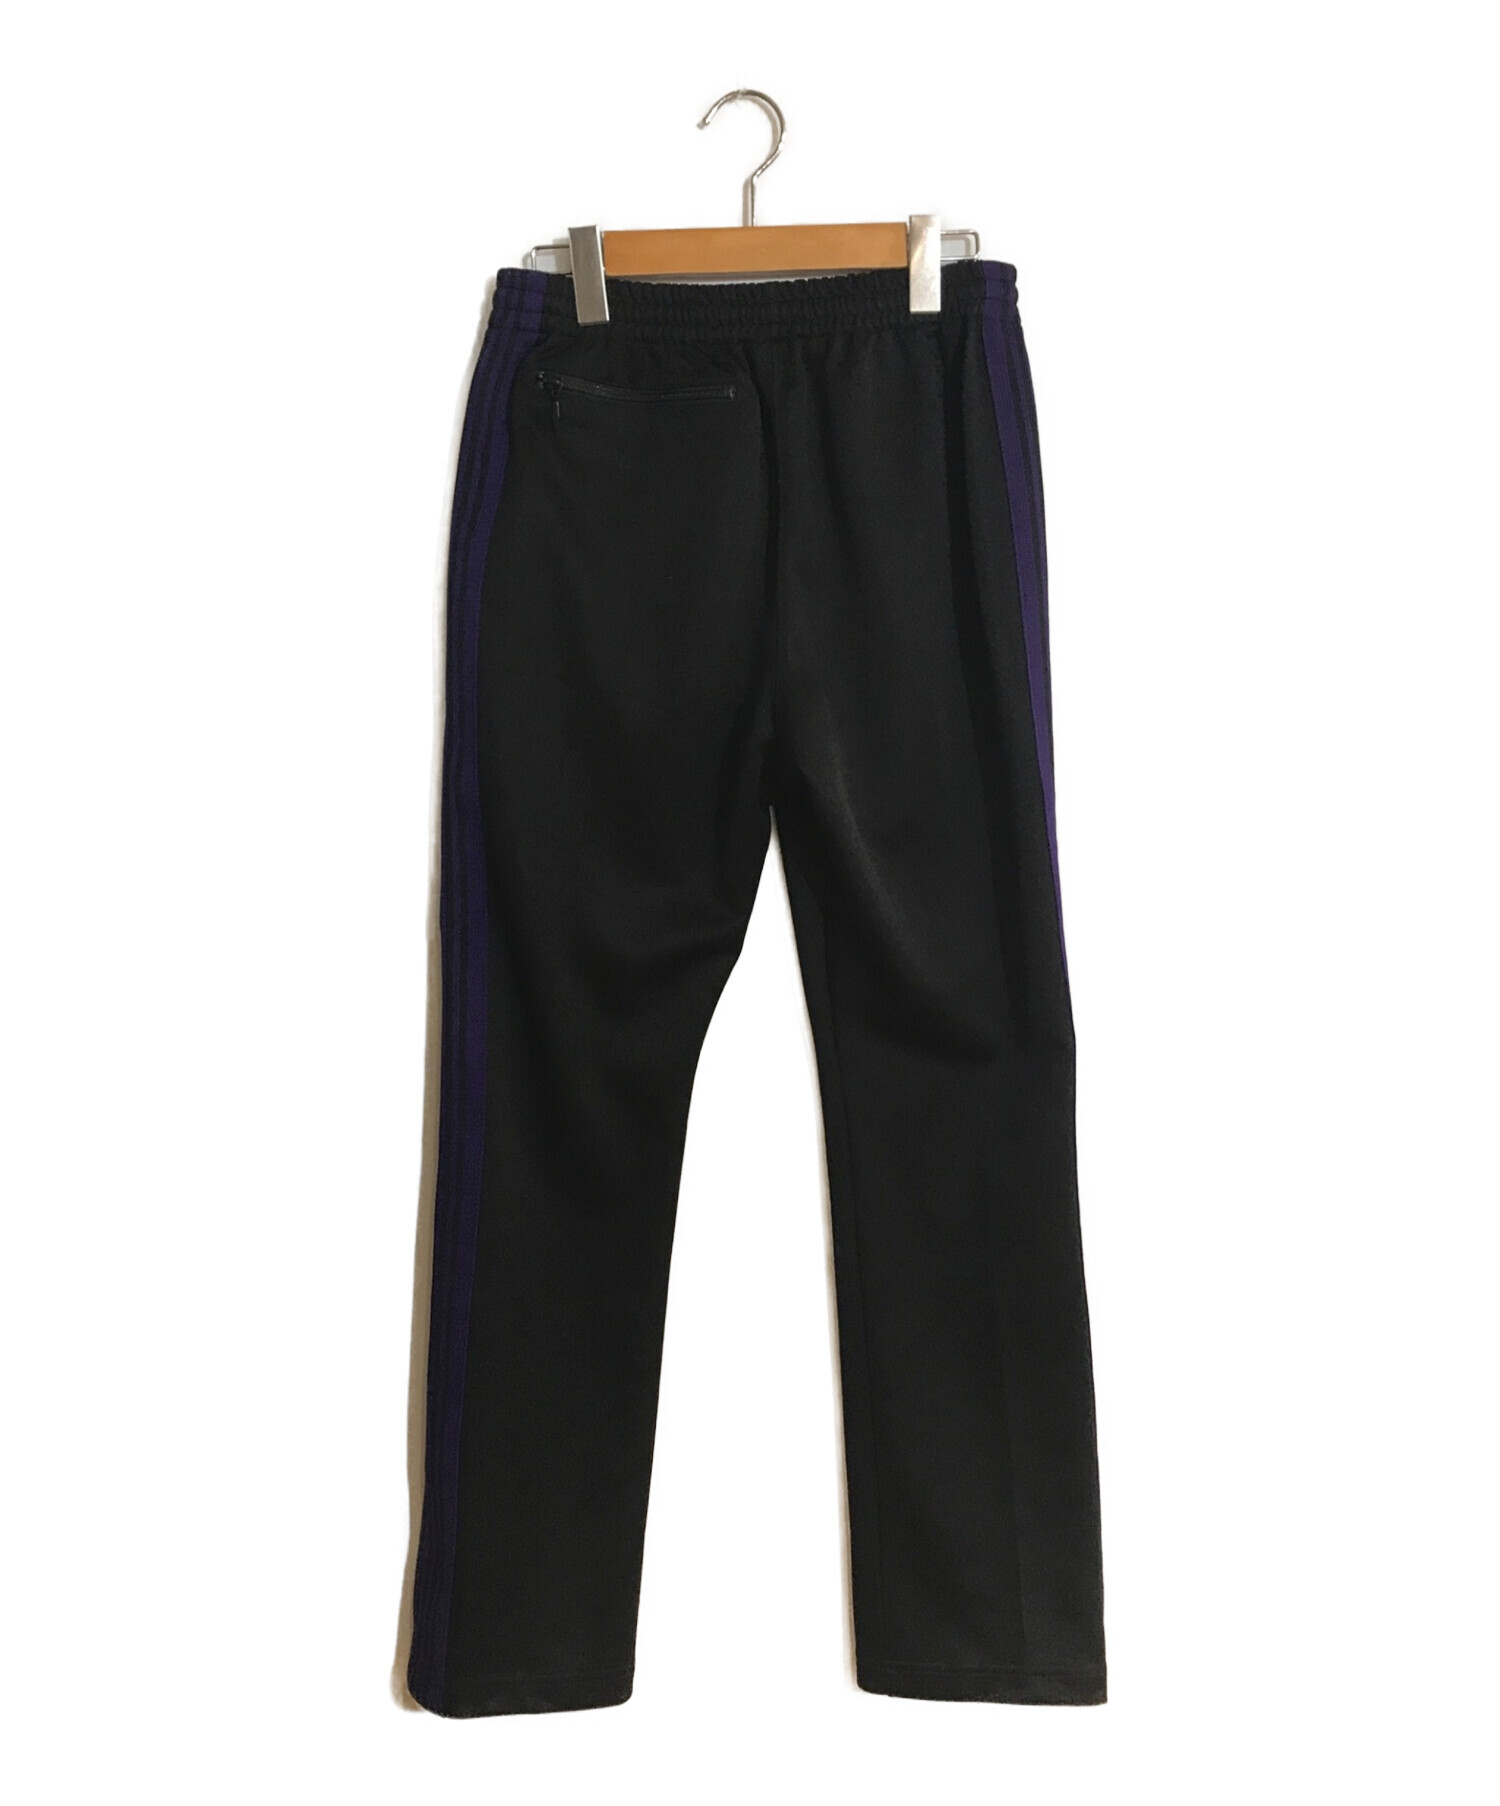 Needles (ニードルス) Narrow Track Pants/ナイロントラックパンツ black ?? purple サイズ:SIZE XS